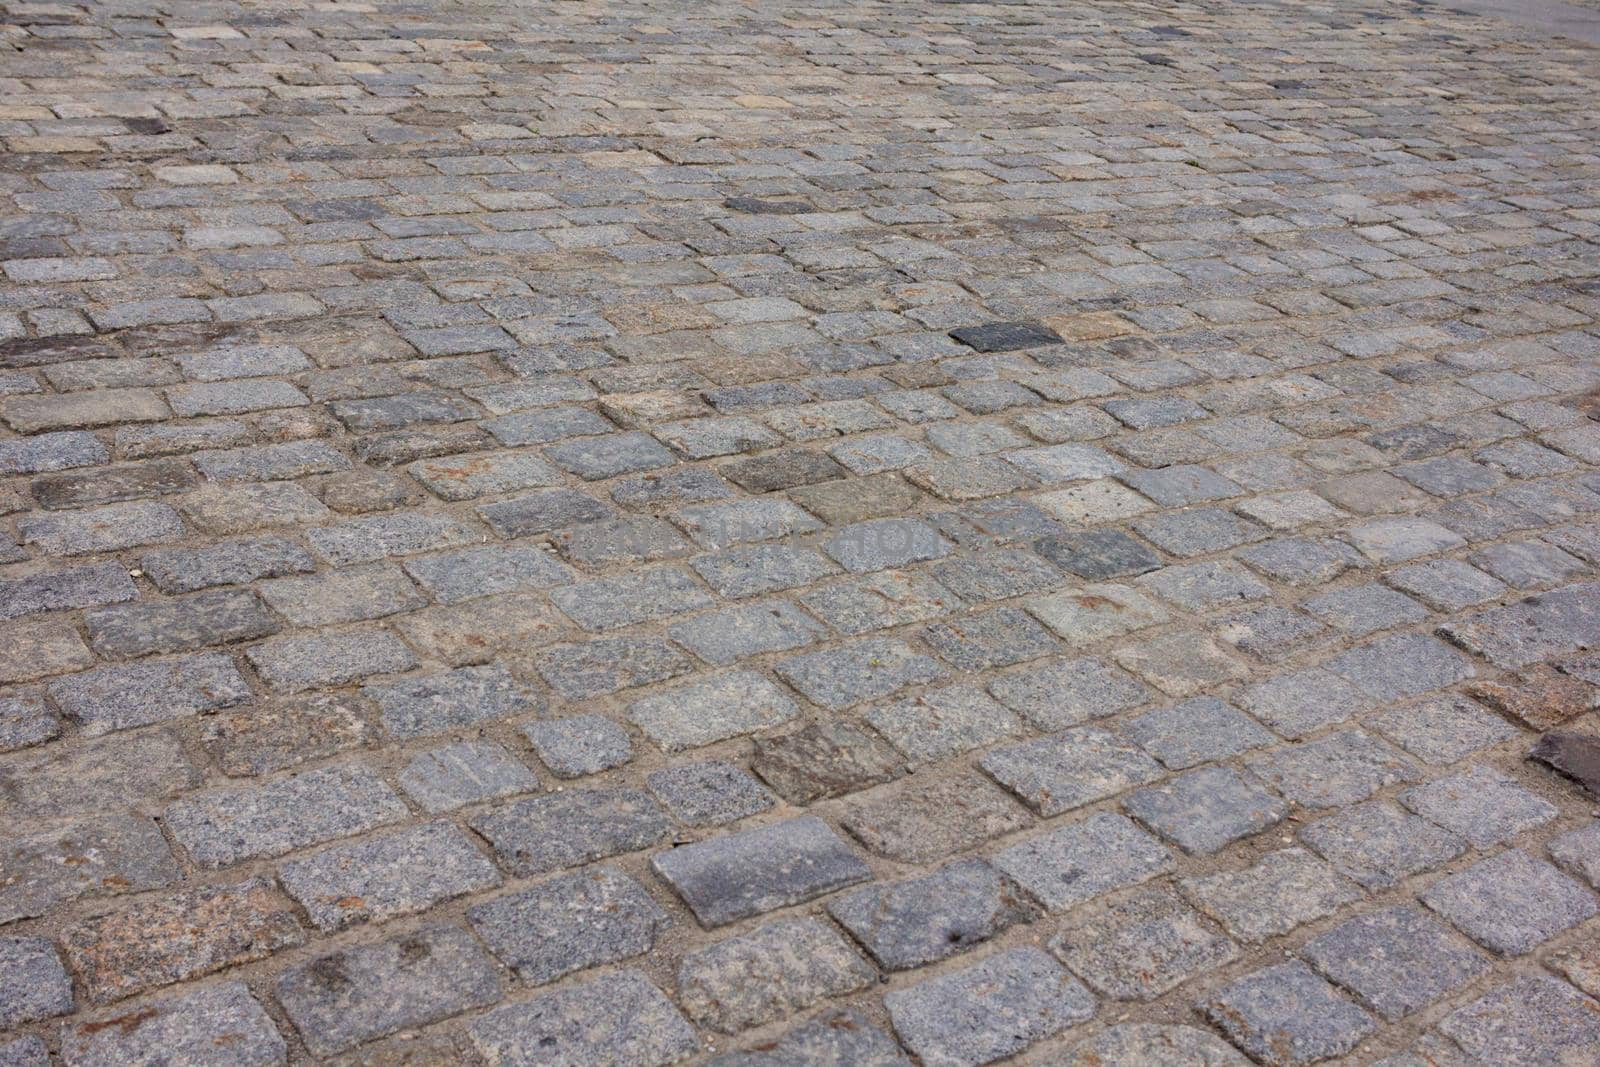 A close up of a brick road by SorokinNikita